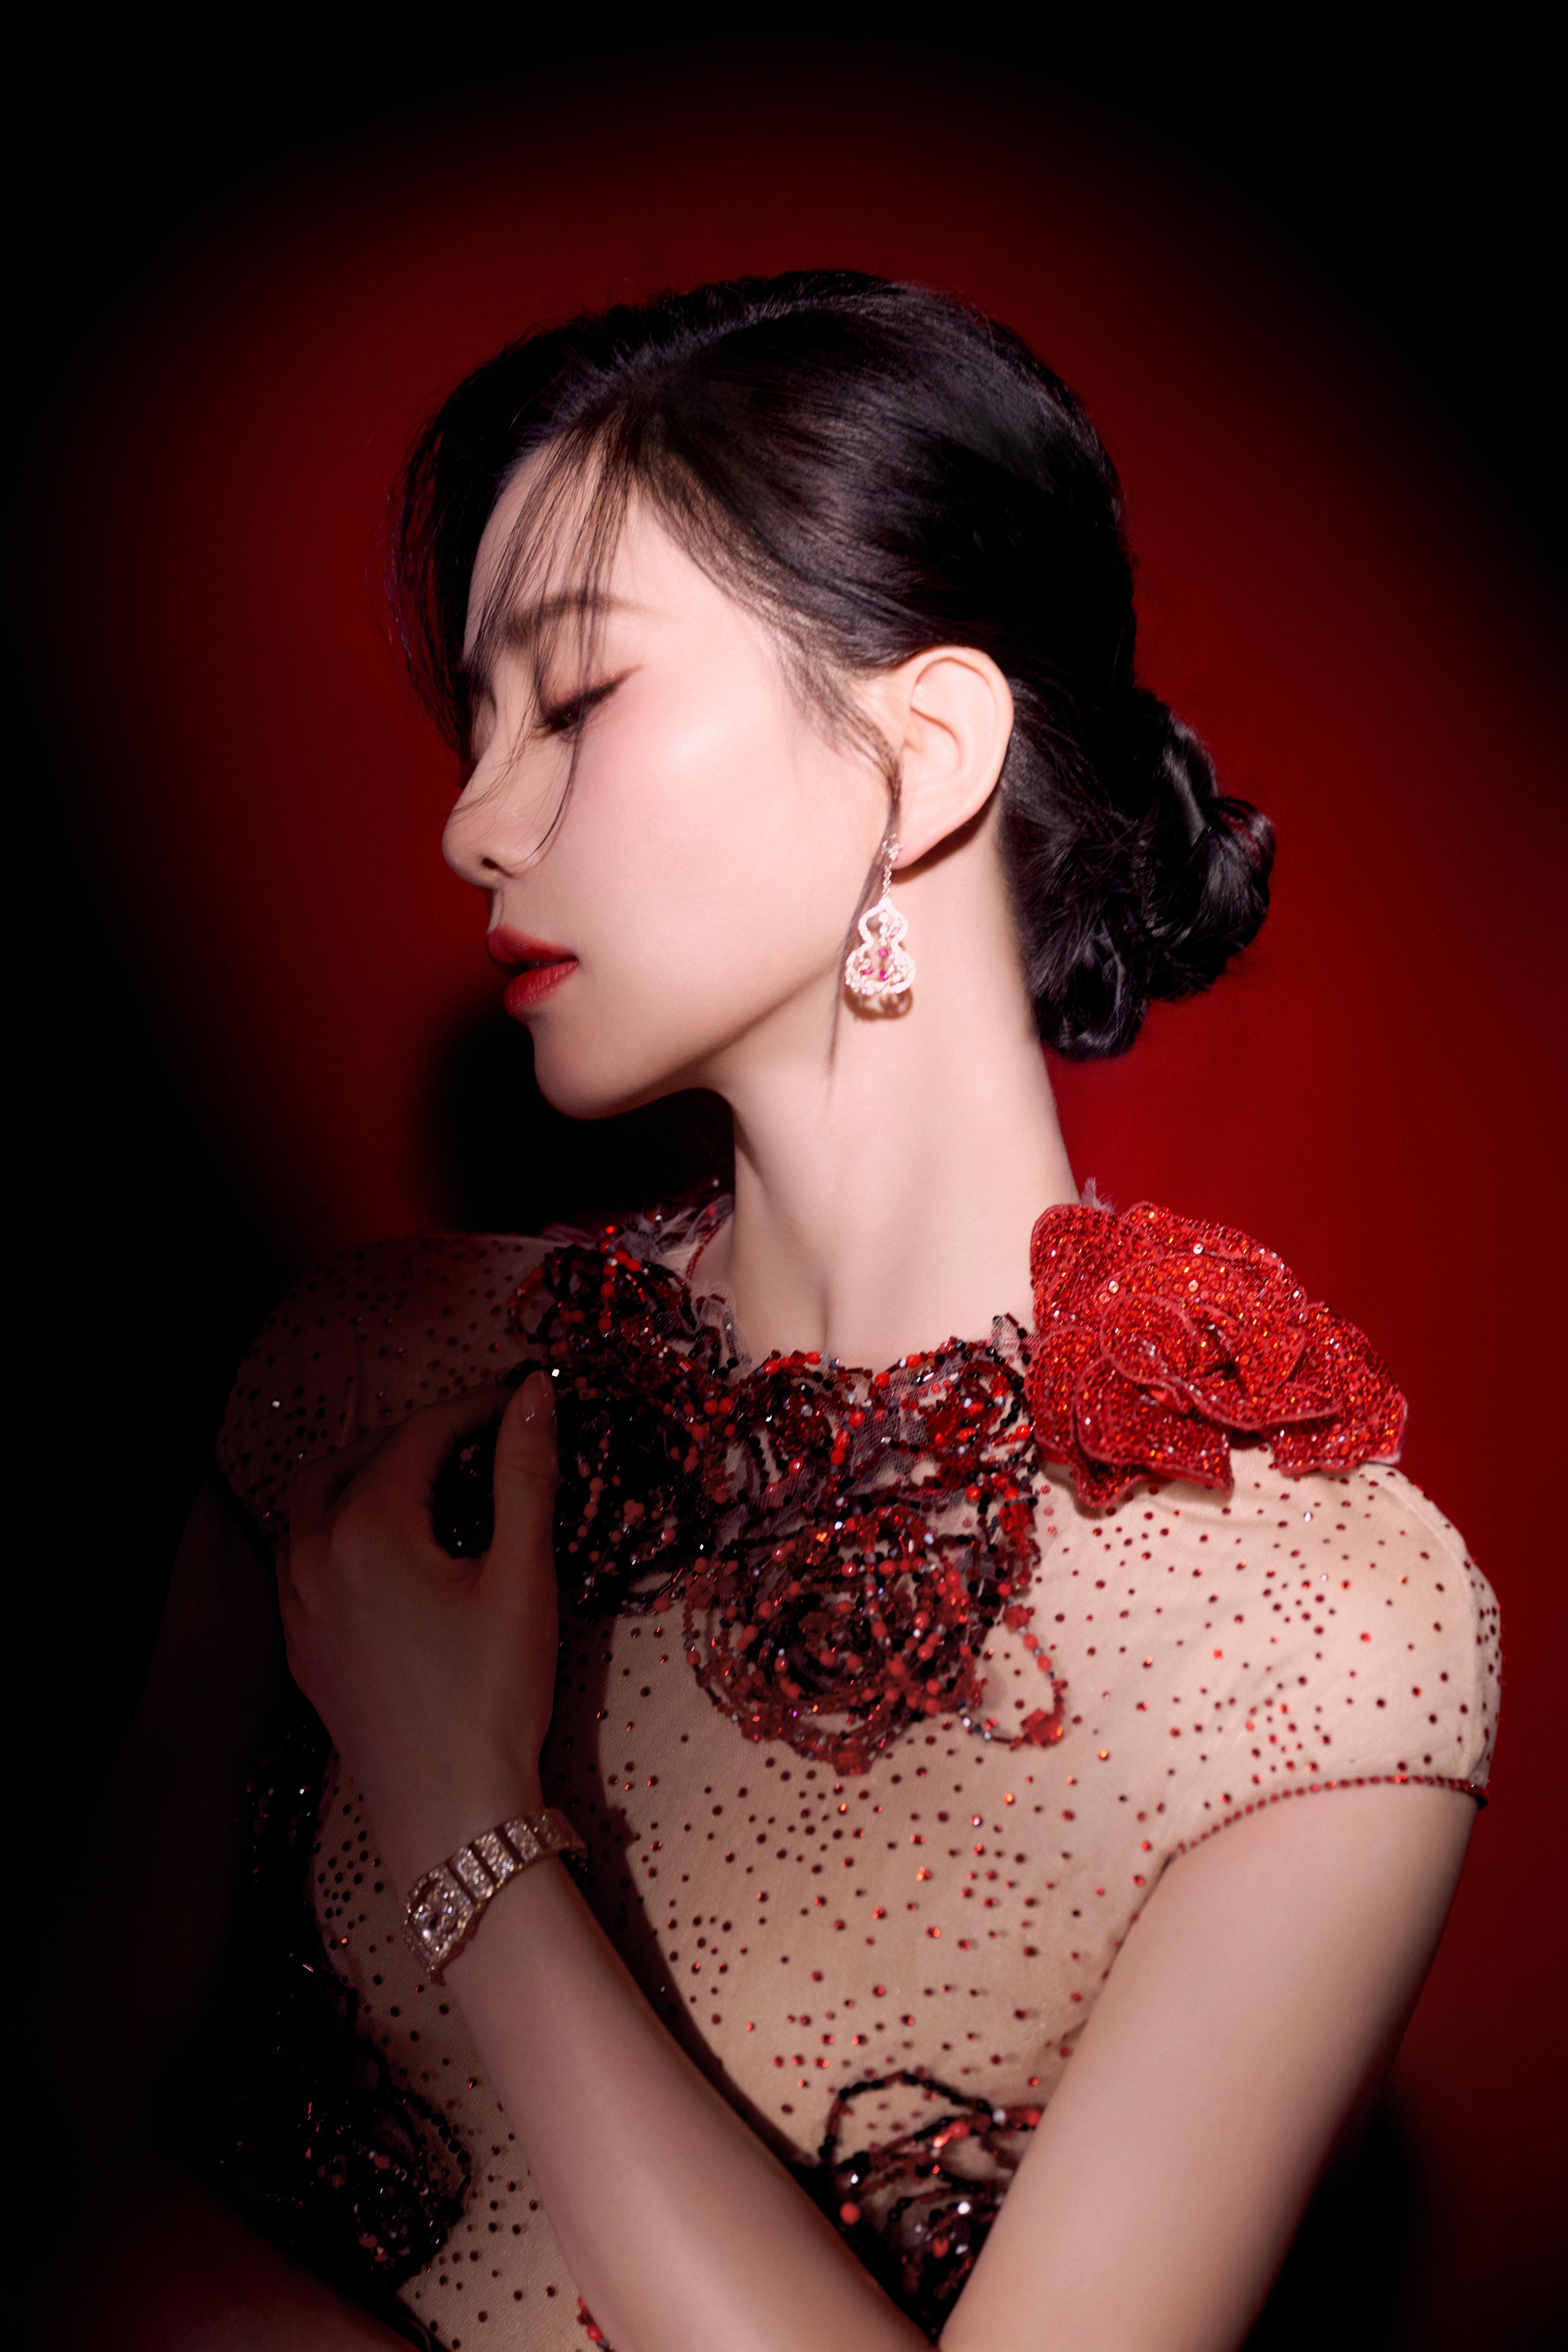 刘诗诗身穿长裙红玫瑰点缀 举止温柔优雅热烈惊艳,1 (6)